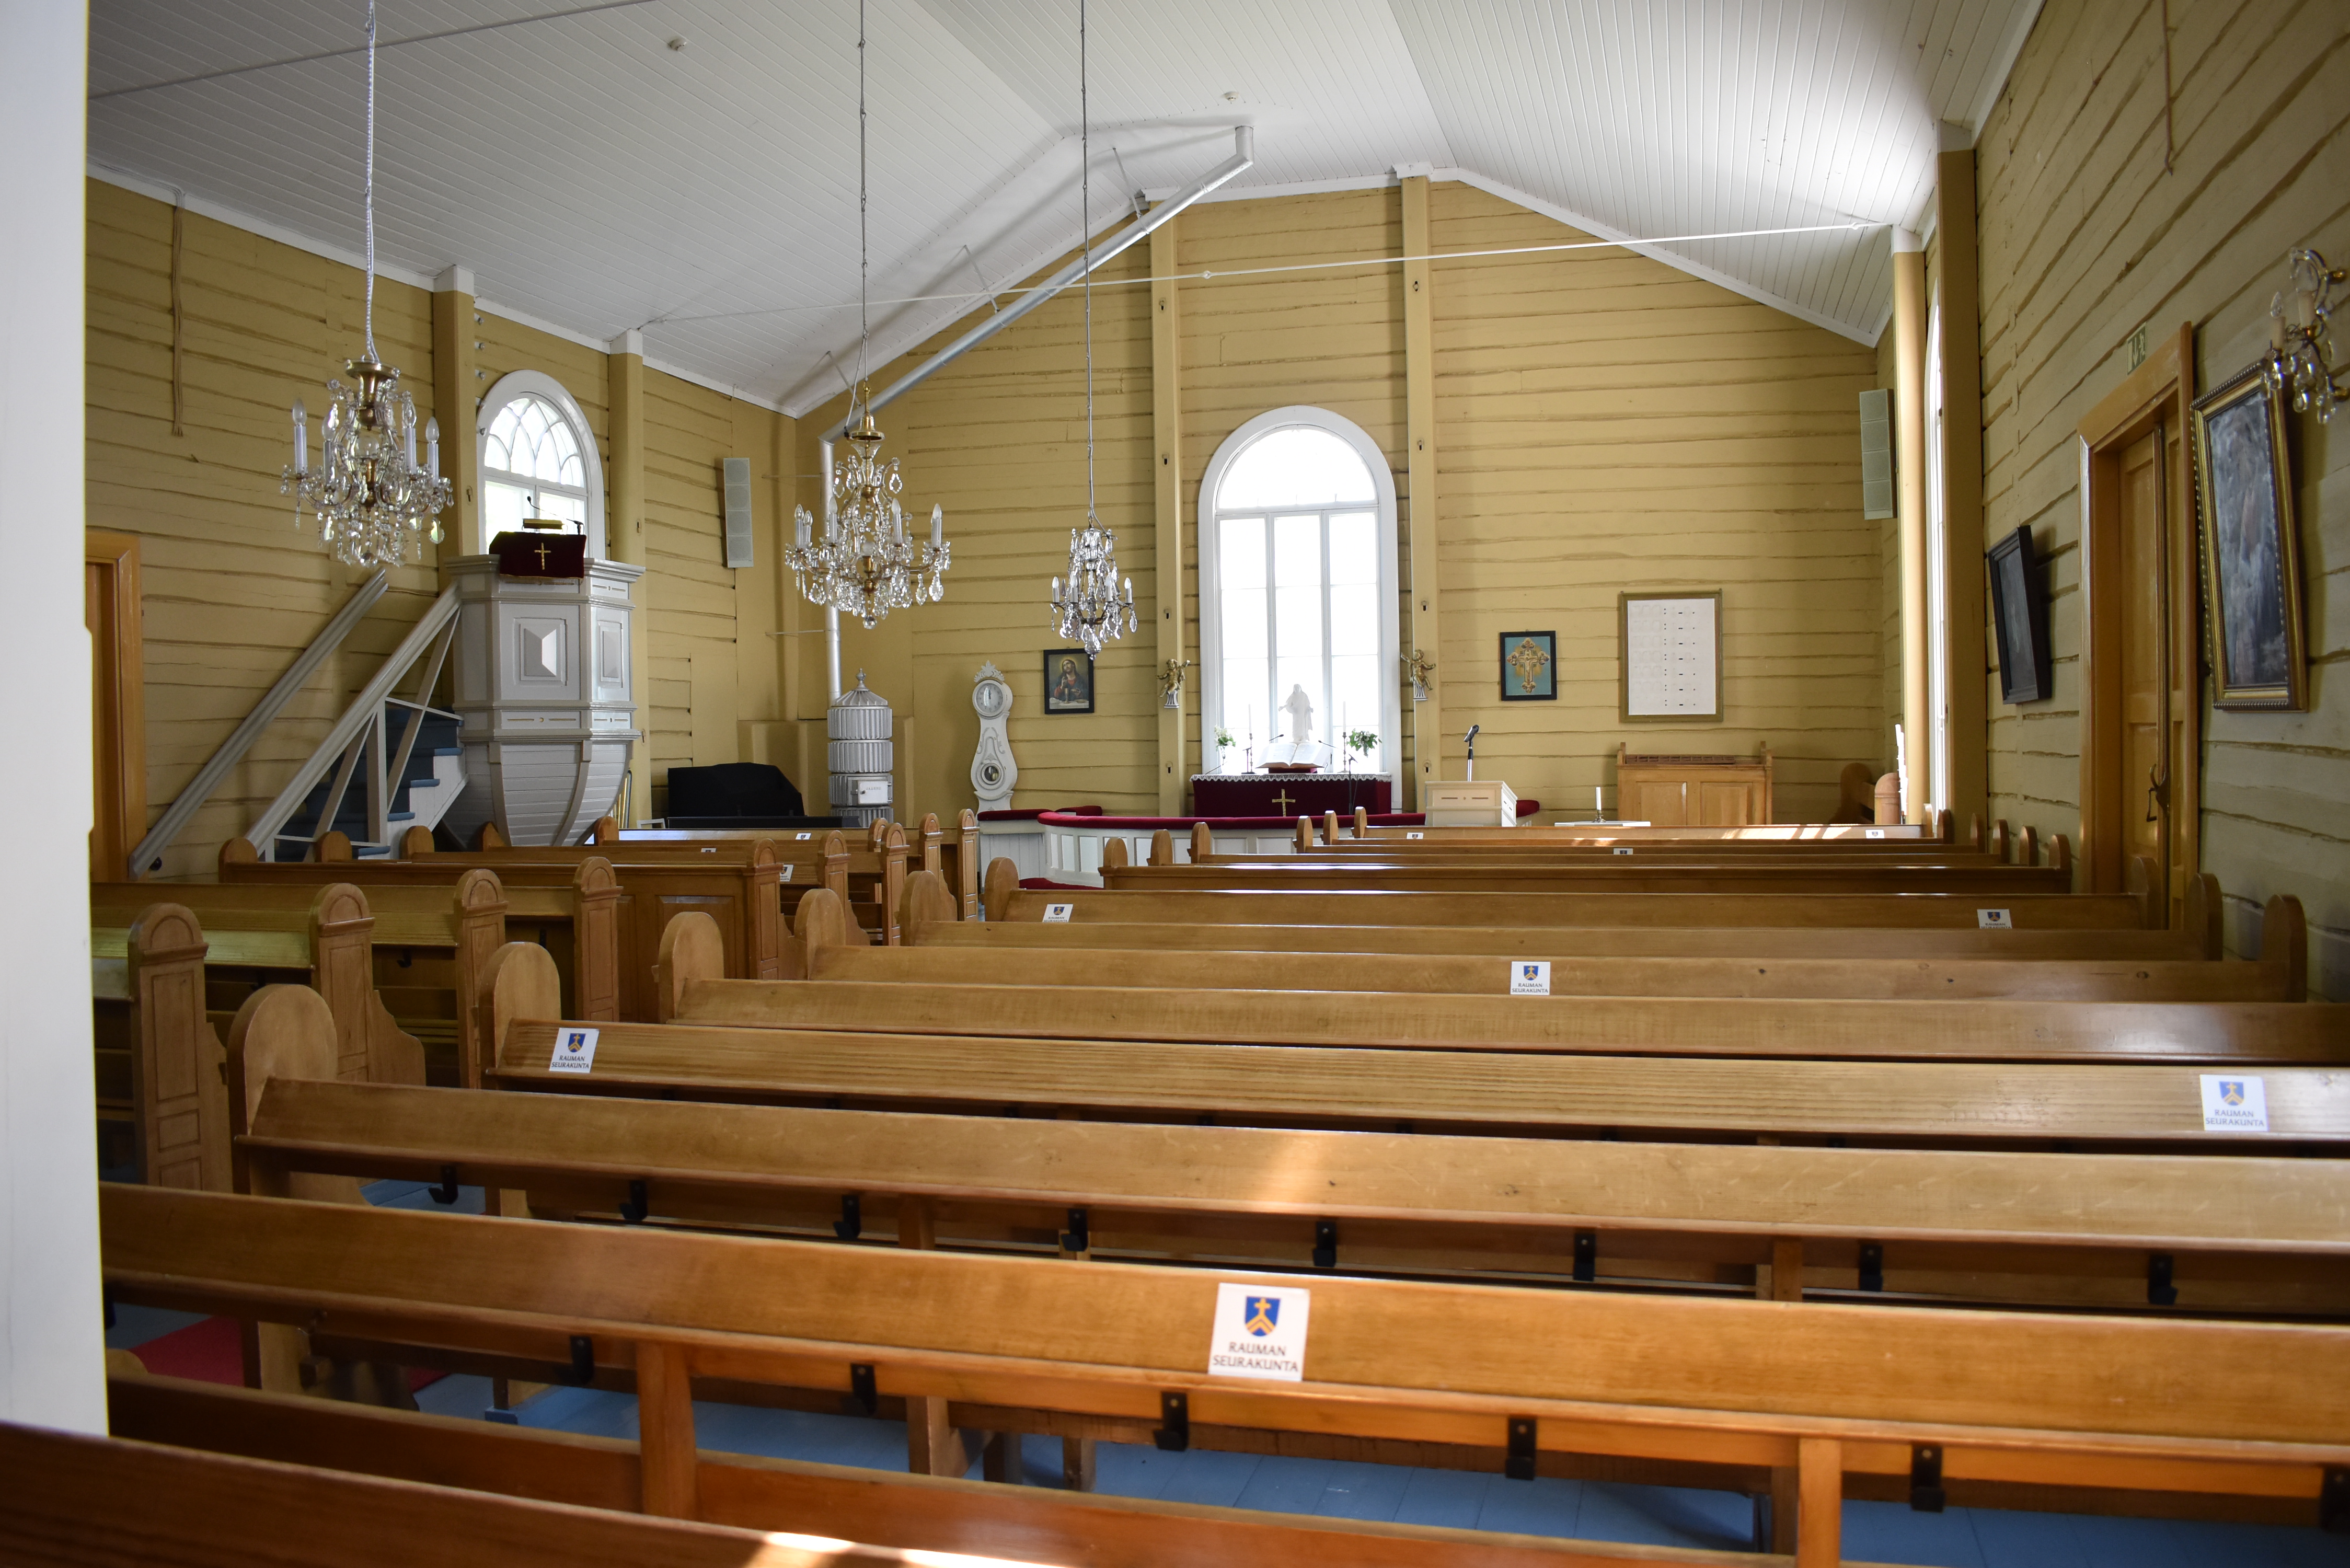 Kodisjoen kirkon kirkkosali